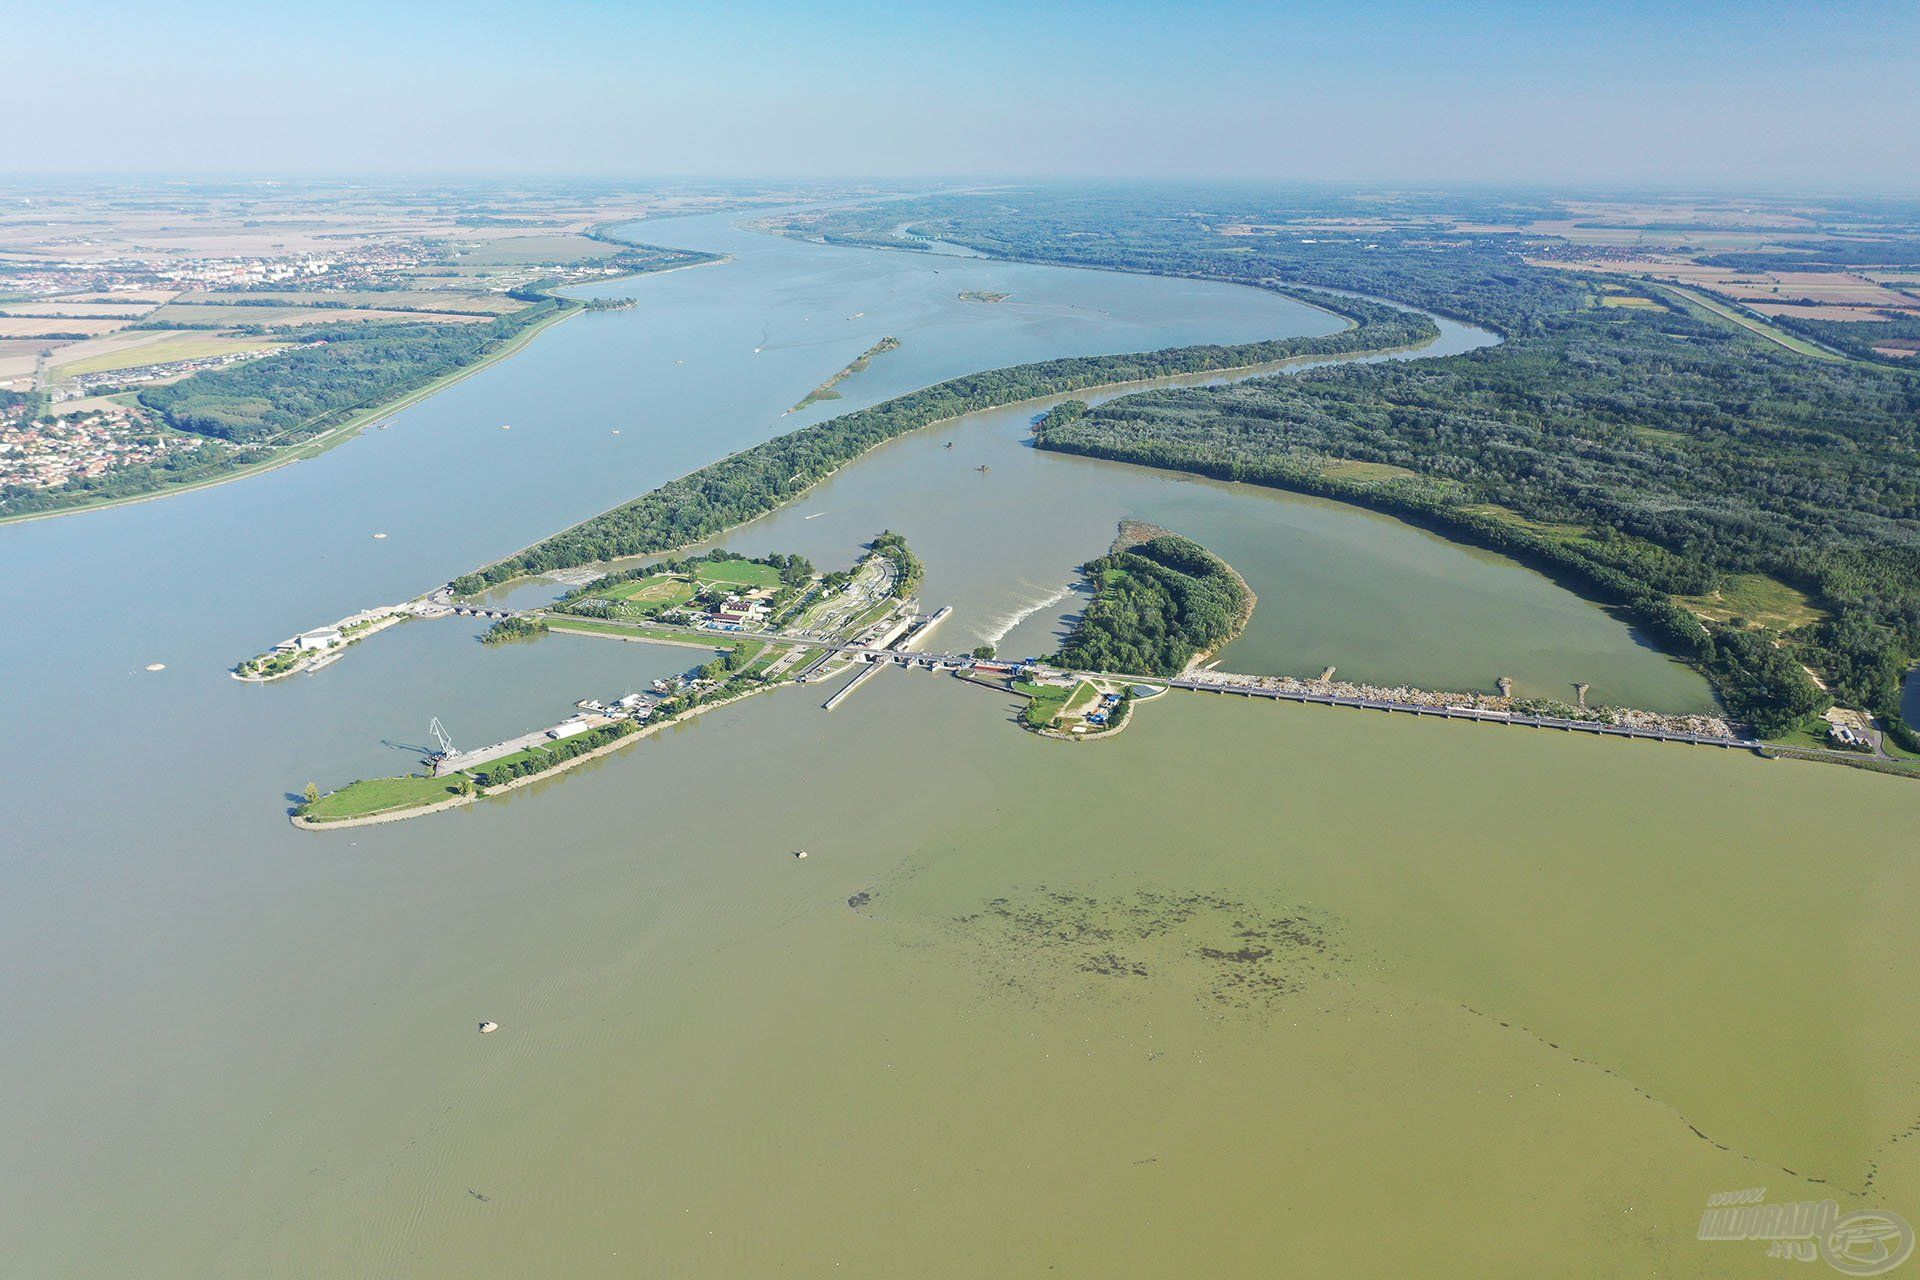 Így néz ki a Duna folyó duzzasztott szakasza Szlovákiában. Az itt látható részt nevezik Körtvélyesi-víztározónak